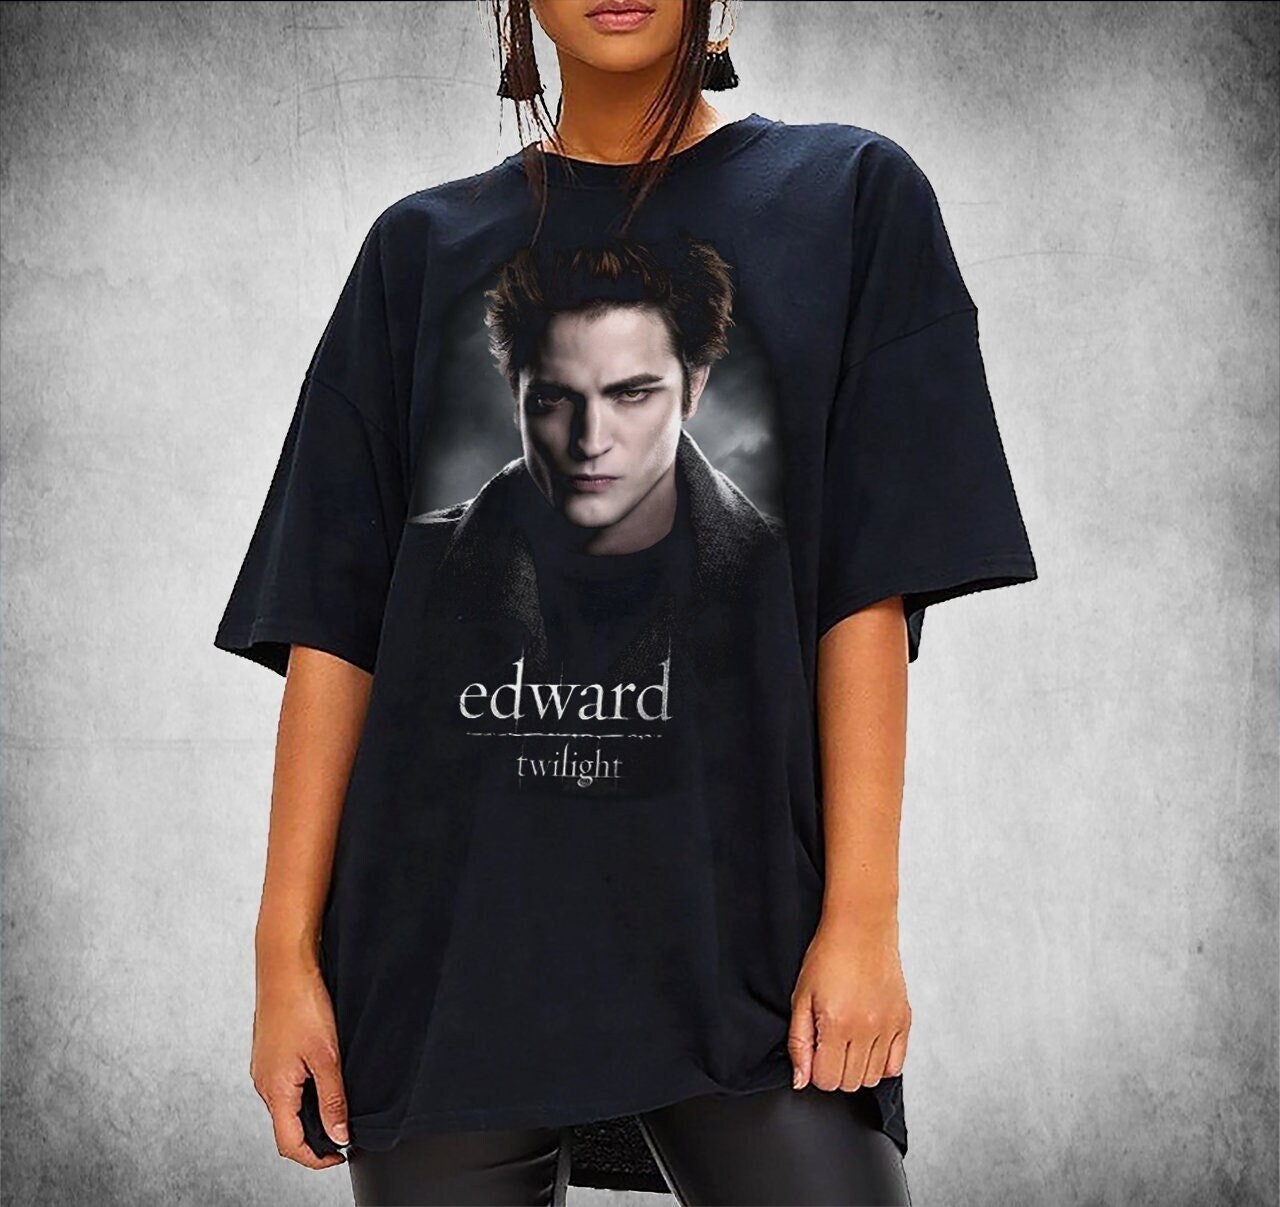 Edward cullen twilight t shirt robert pattinson t-shirt